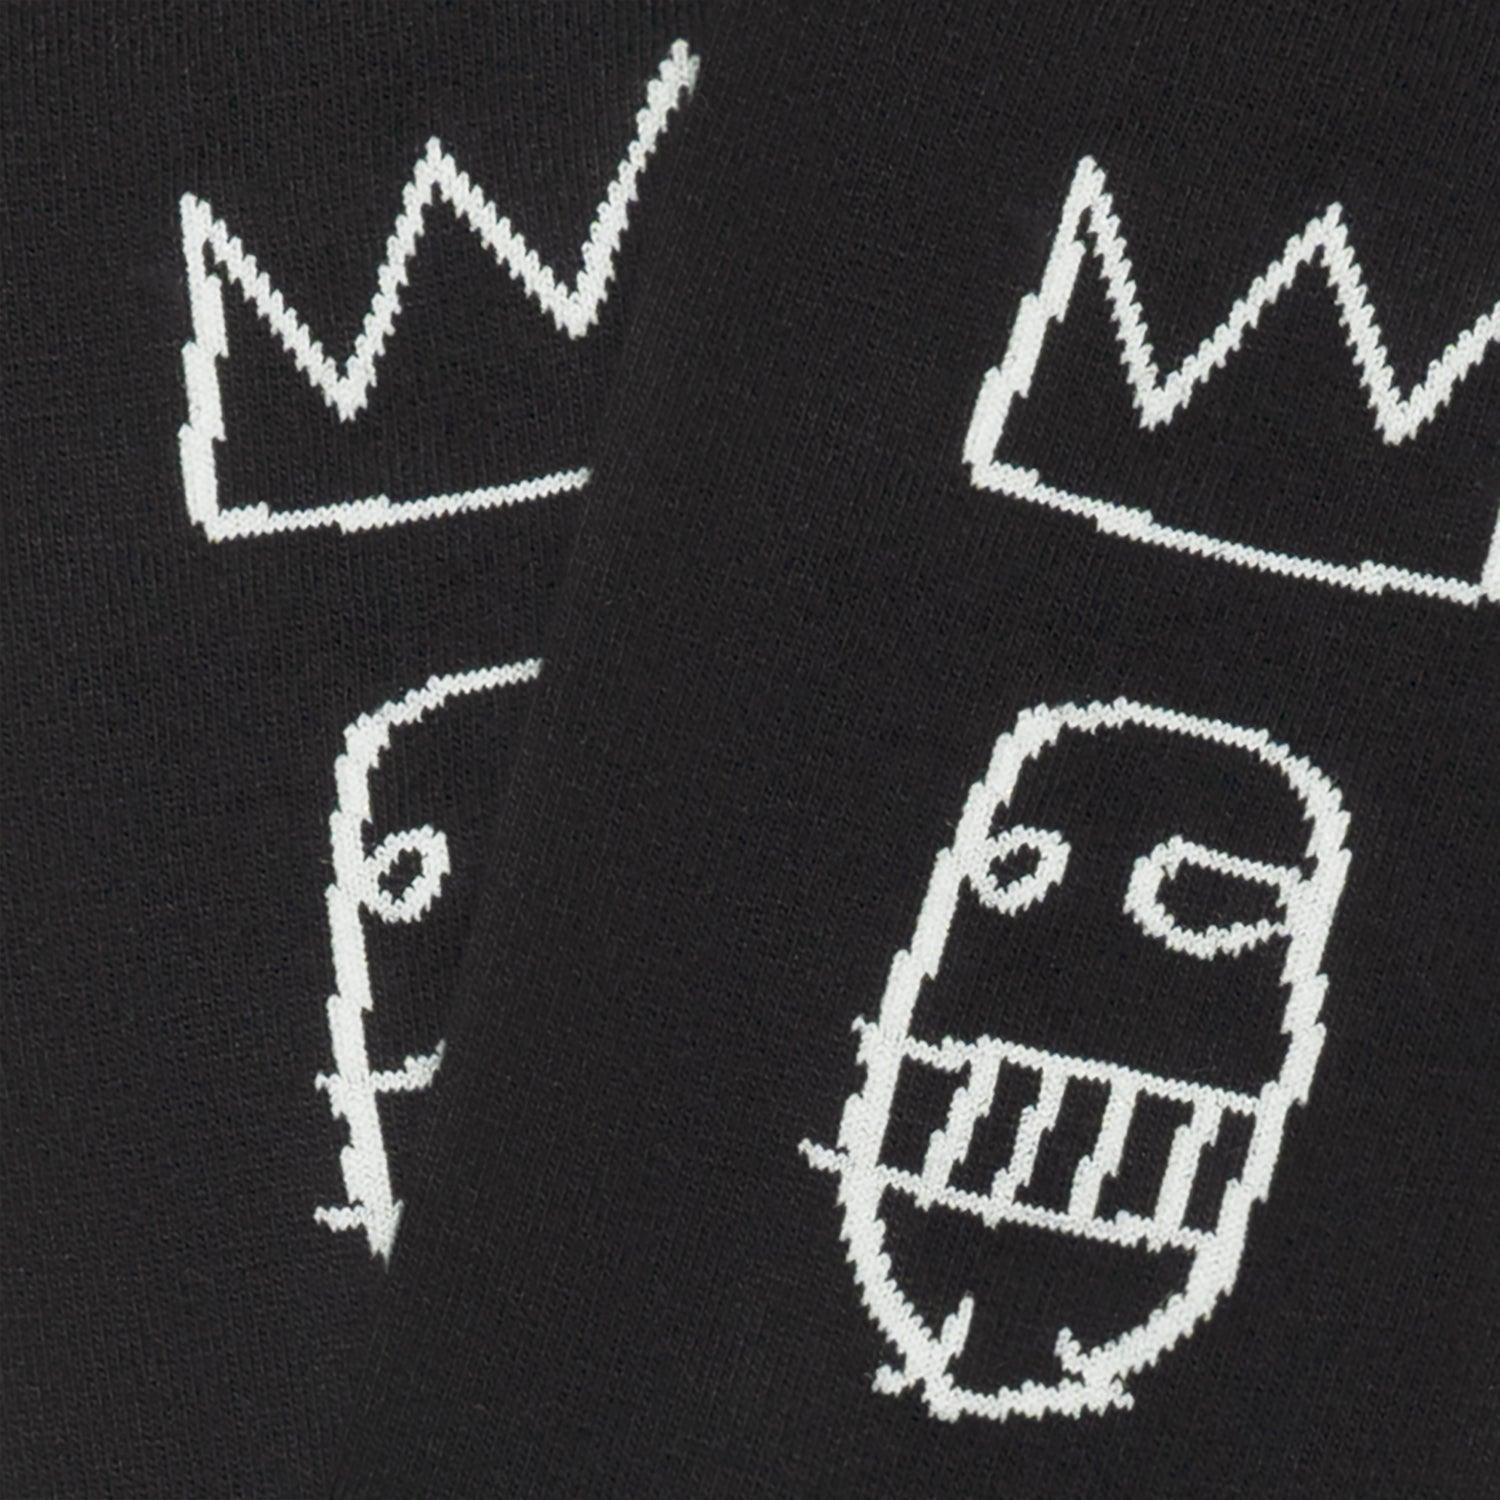 Jimmy Lion Basquiat Sugar Ray Robinson - Cobalto Accesorios